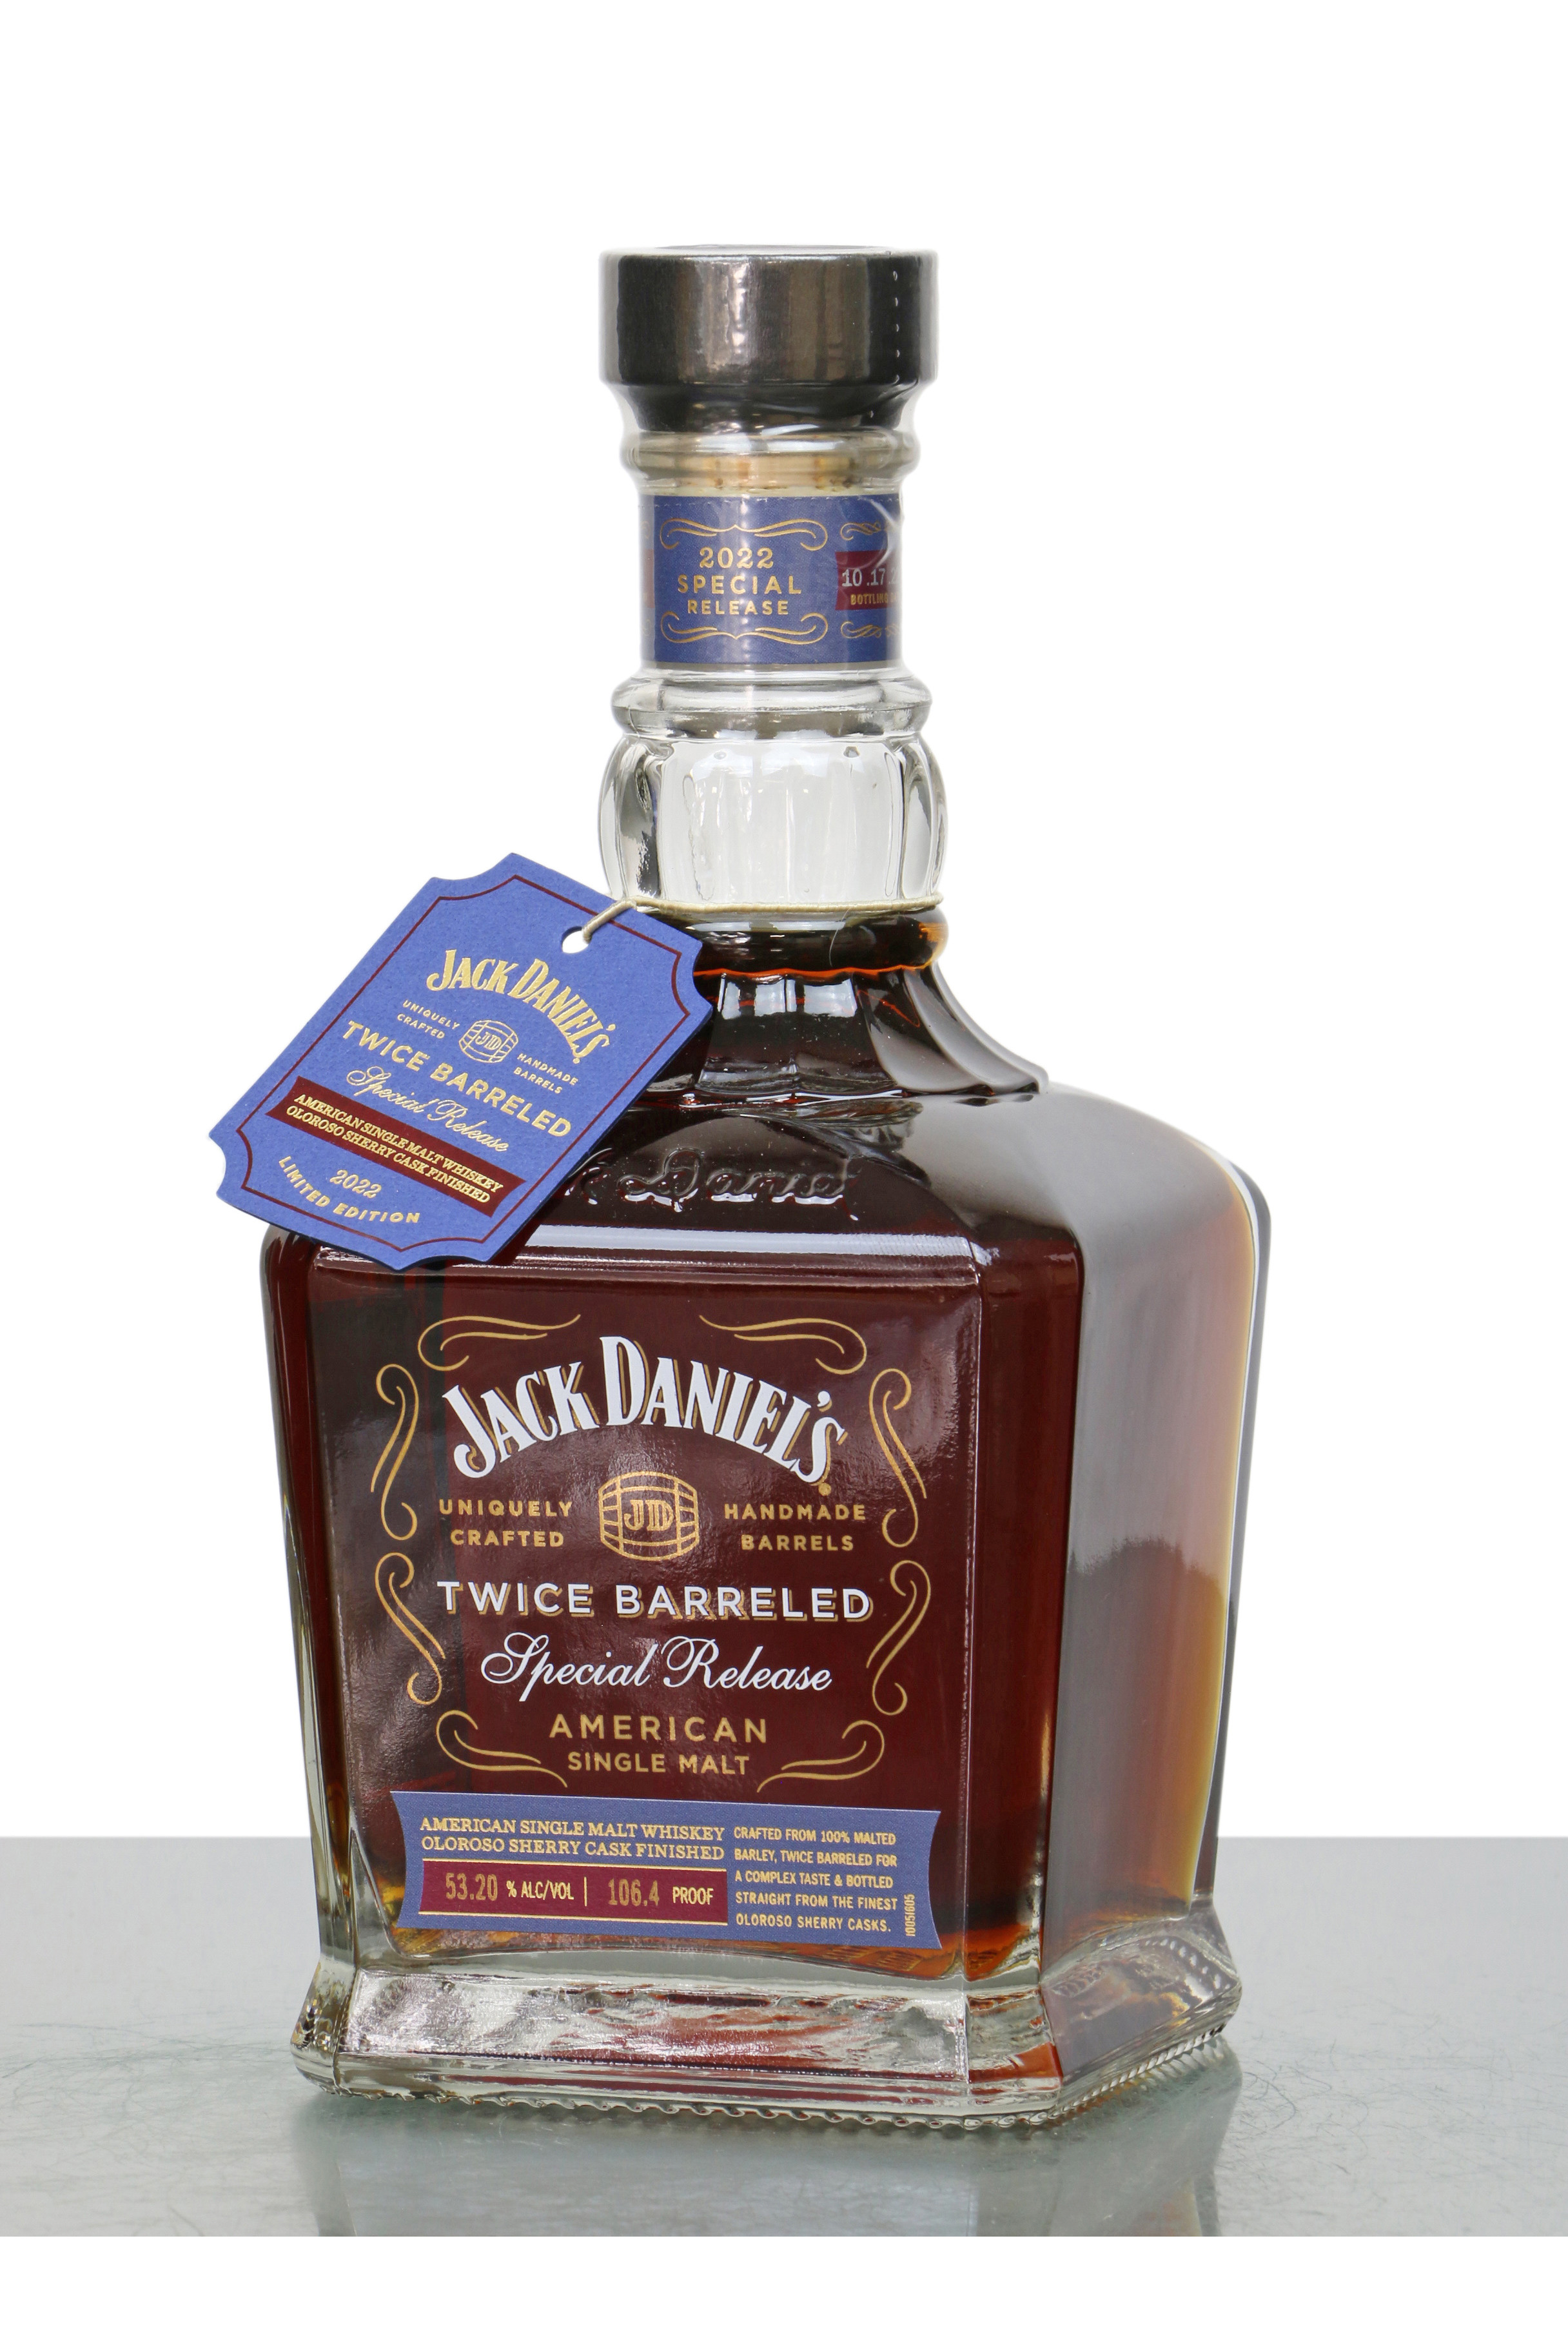 Jack Daniel's American Single Malt Twice Barreled Special Release